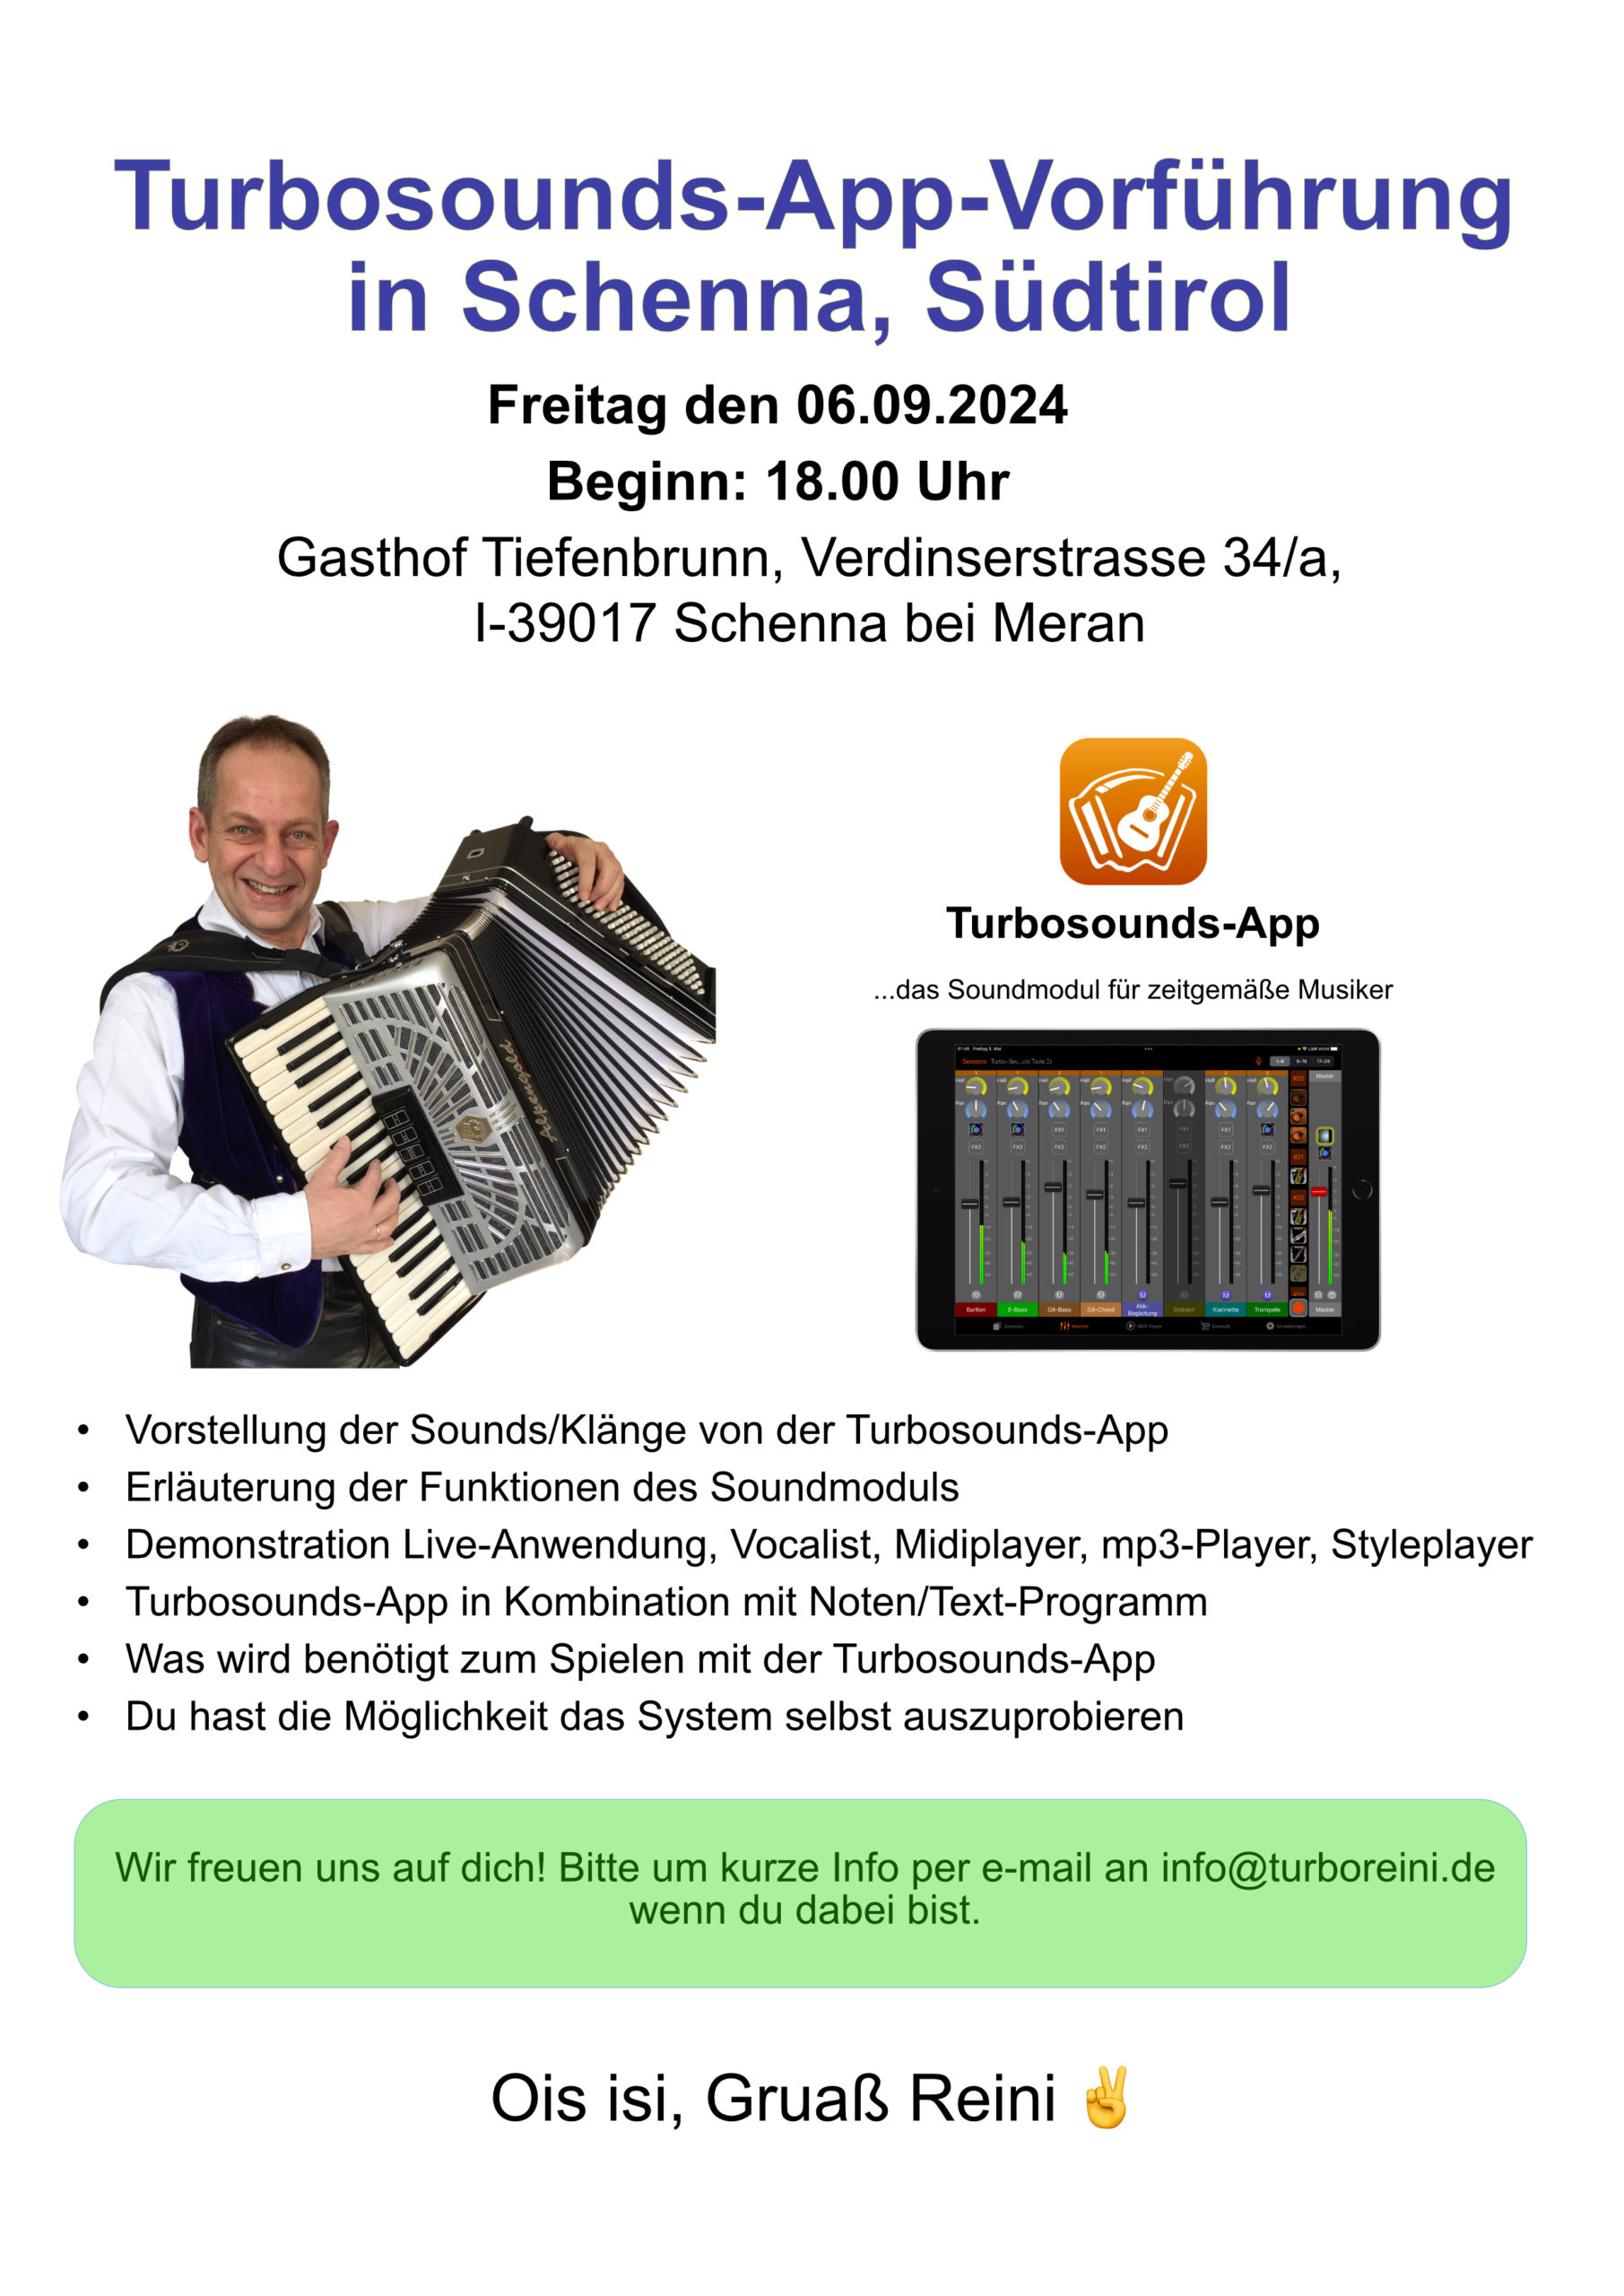 Turbosounds-App Vorführung in Schenna, Südtirol am Freitag den 06.09.2024 ab 18 Uhr, Gasthof Tiefenbrunn